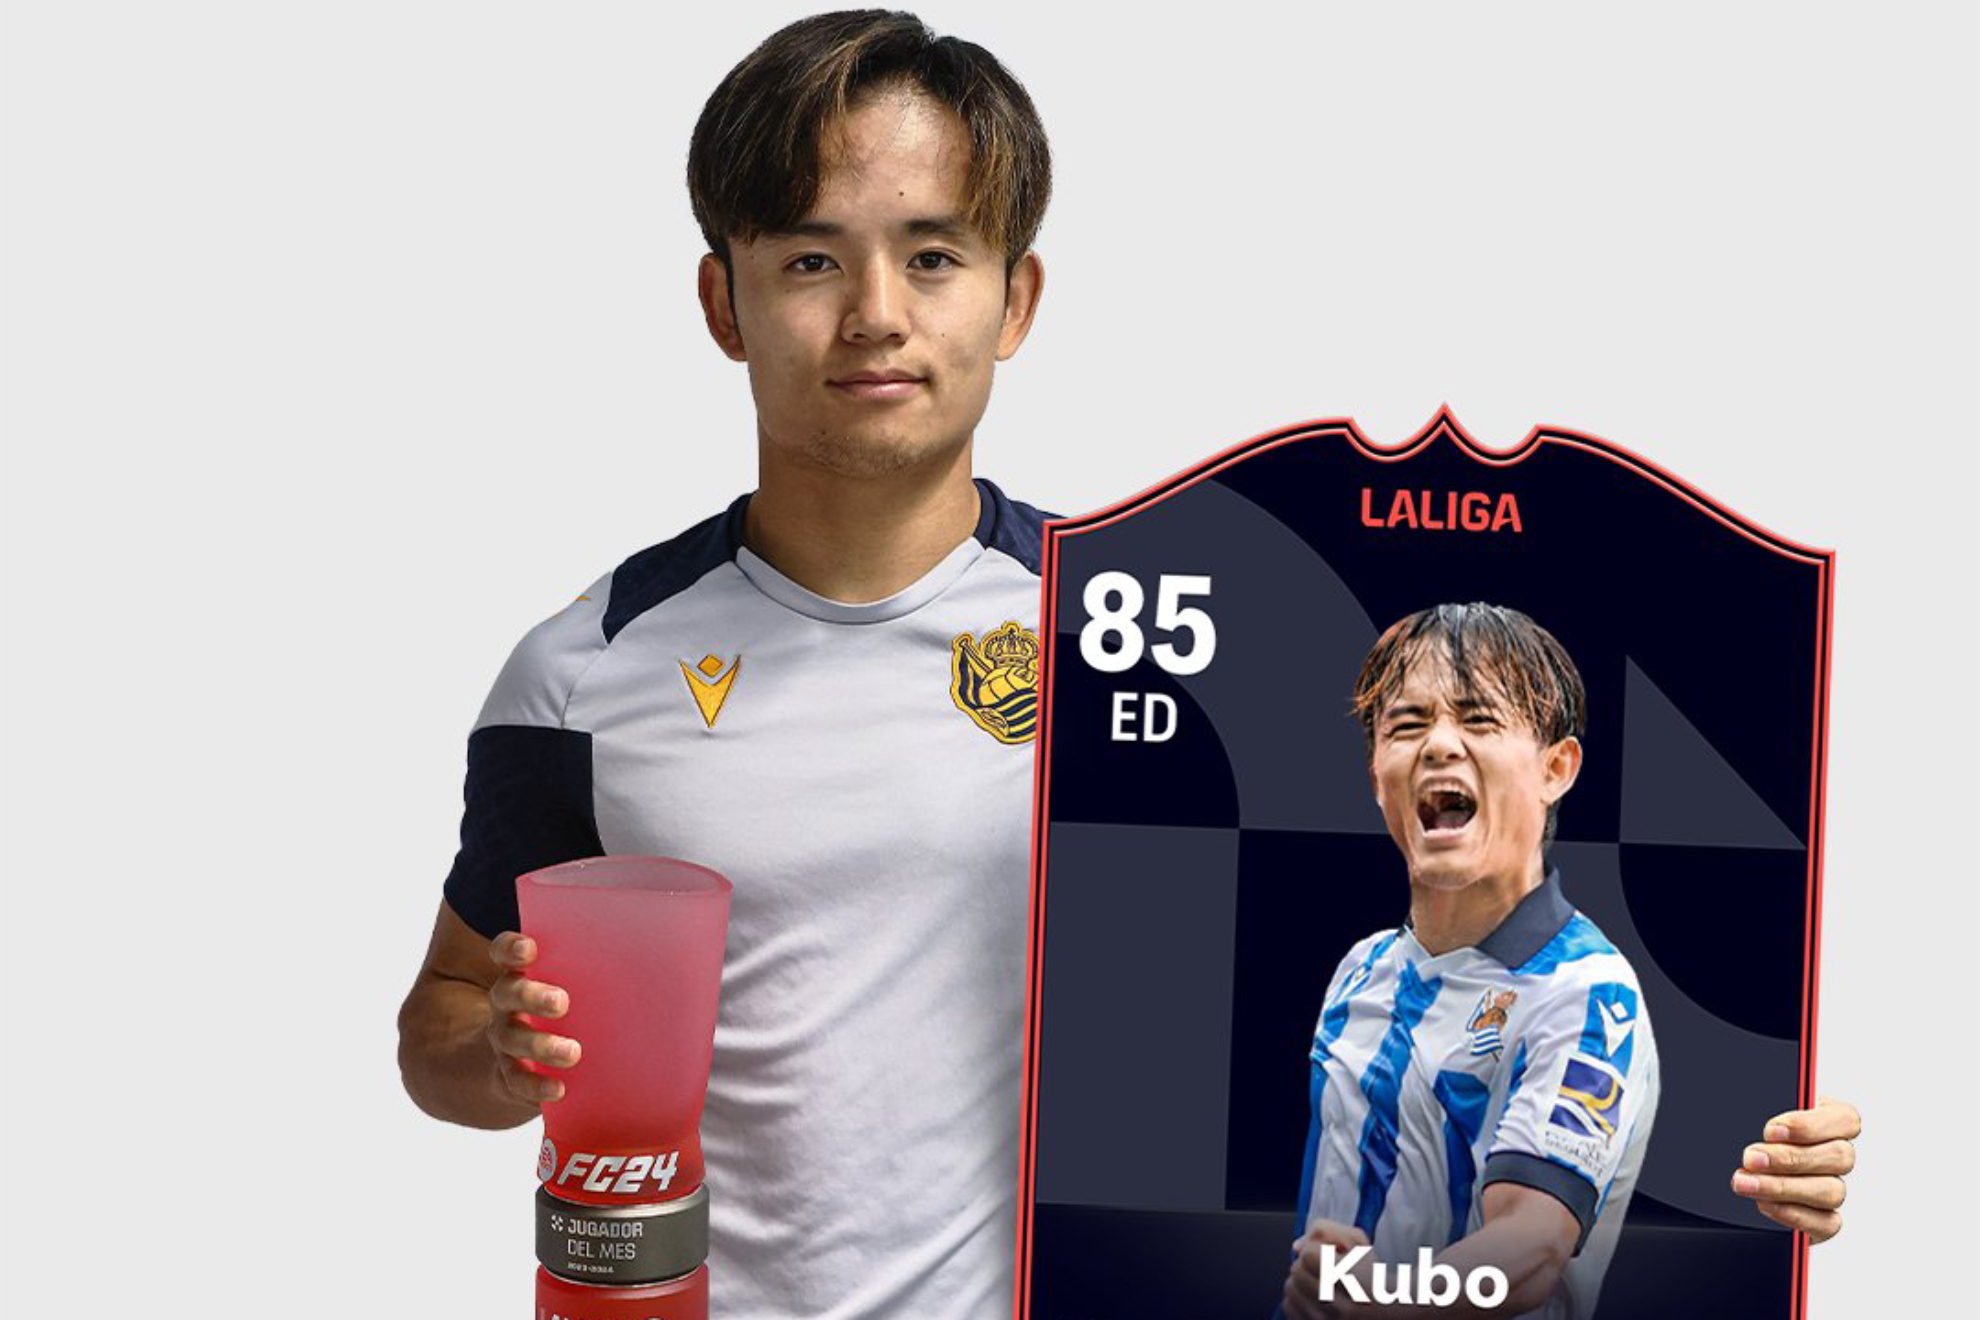 Take Kubo mejora increíblemente su carta en el EA Sports FC 24 como jugador del mes de LaLiga